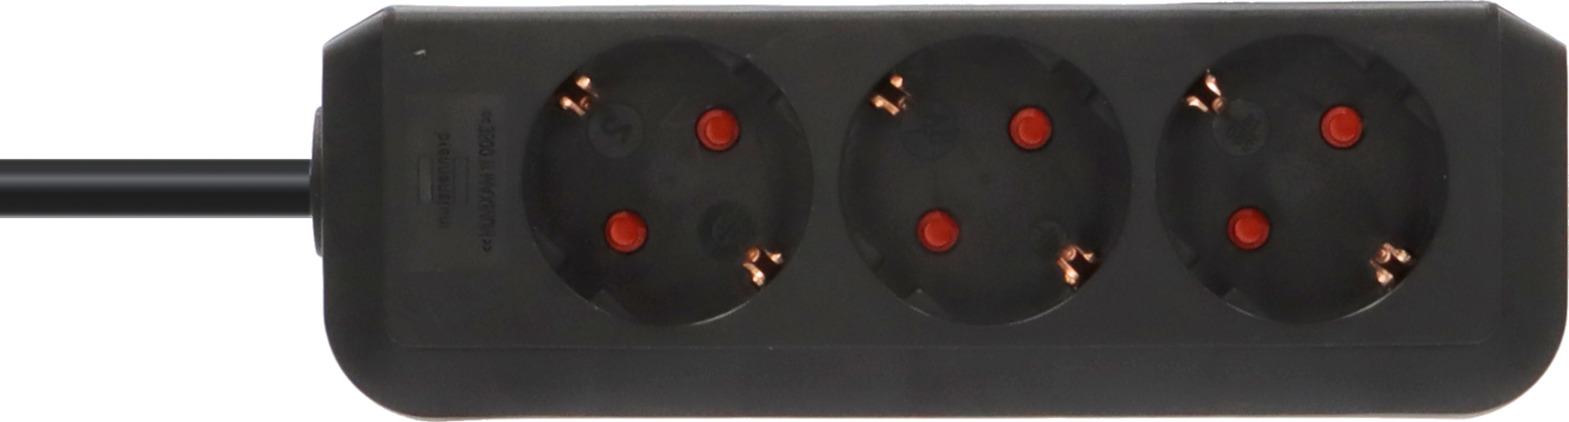 Eco-Line Steckdosenleiste 3-fach (Mehrfachsteckdose mit erhöhtem Berührungsschutz und 1,5m Kabel) schwarz